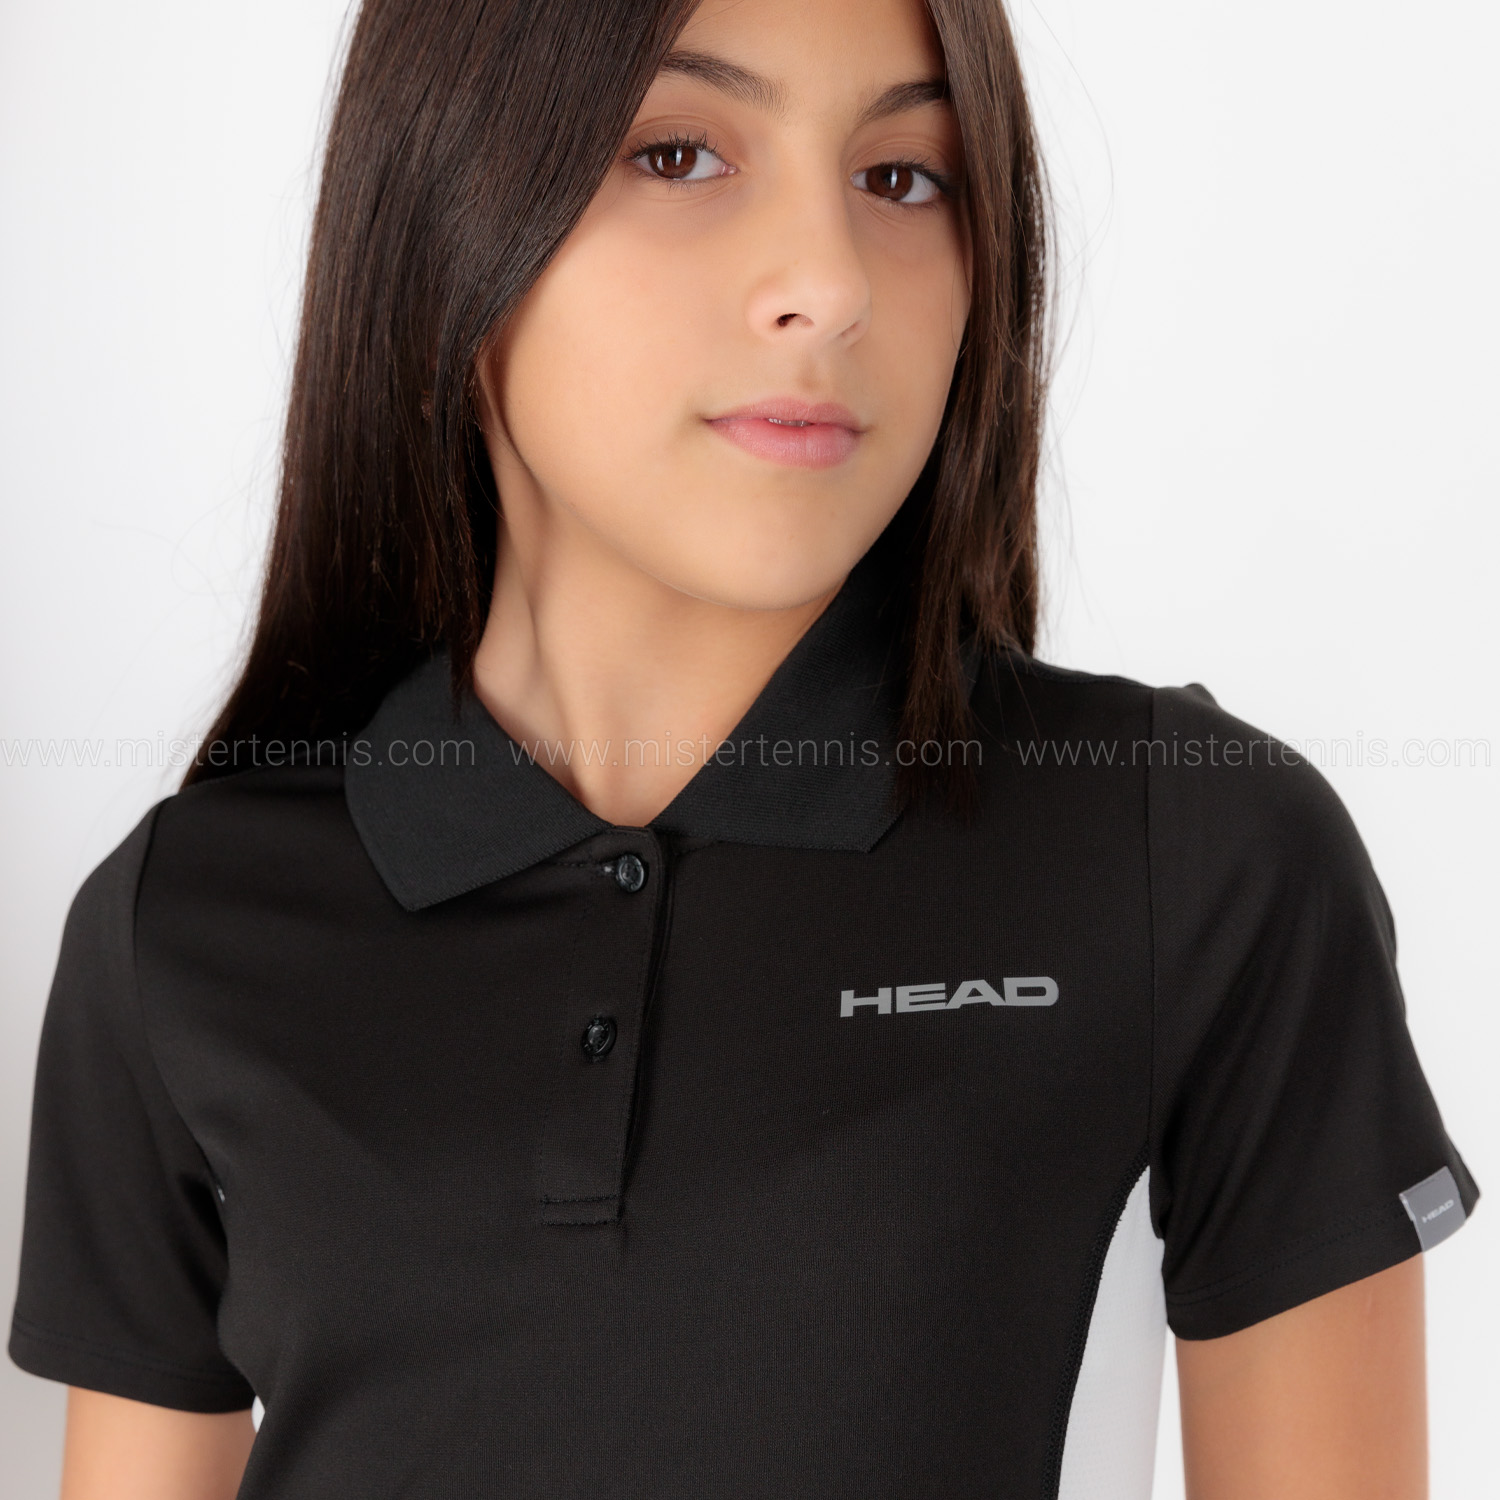 Head Club Tech Polo Niña - Black